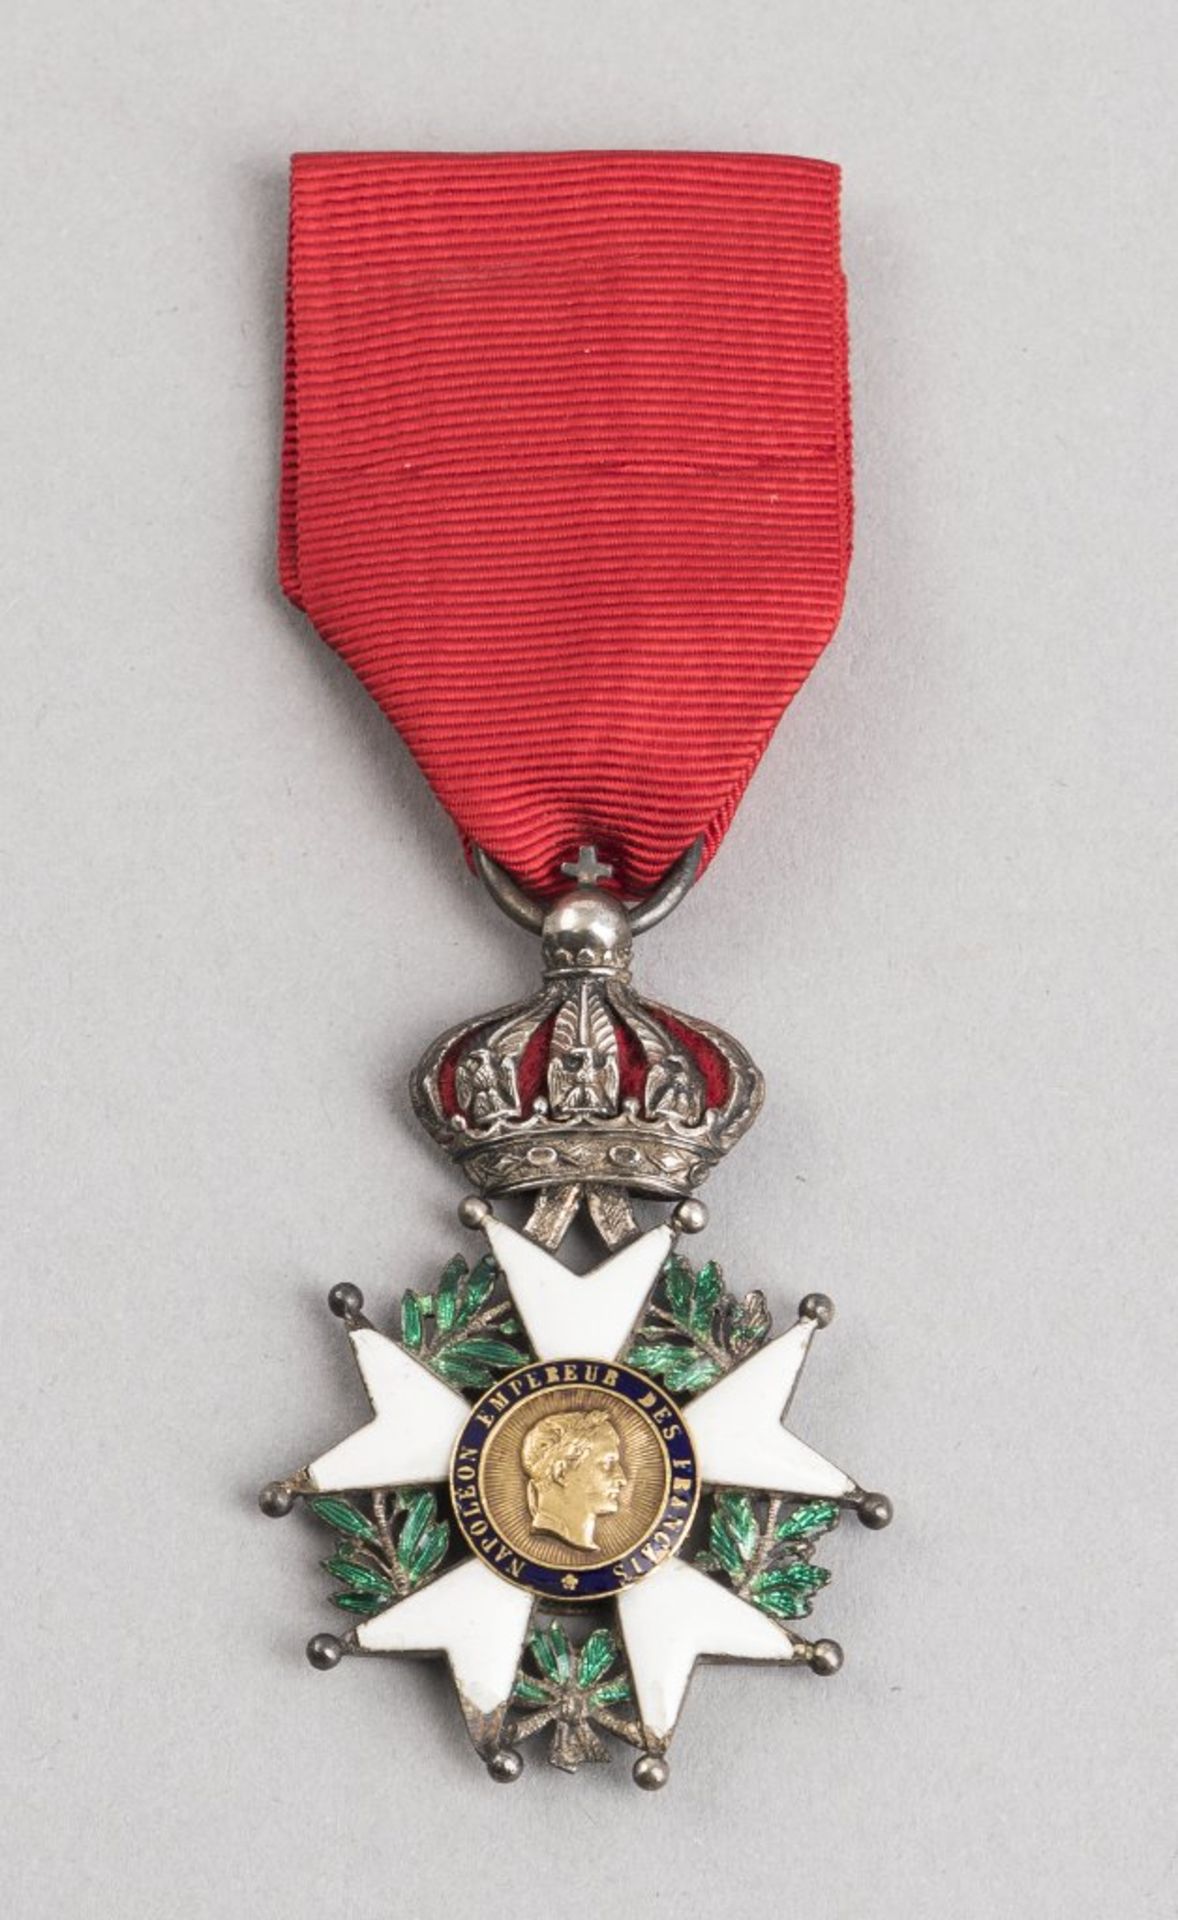 Frankreich: Orden der Ehrenlegion, 2. Modell 1806-1815.